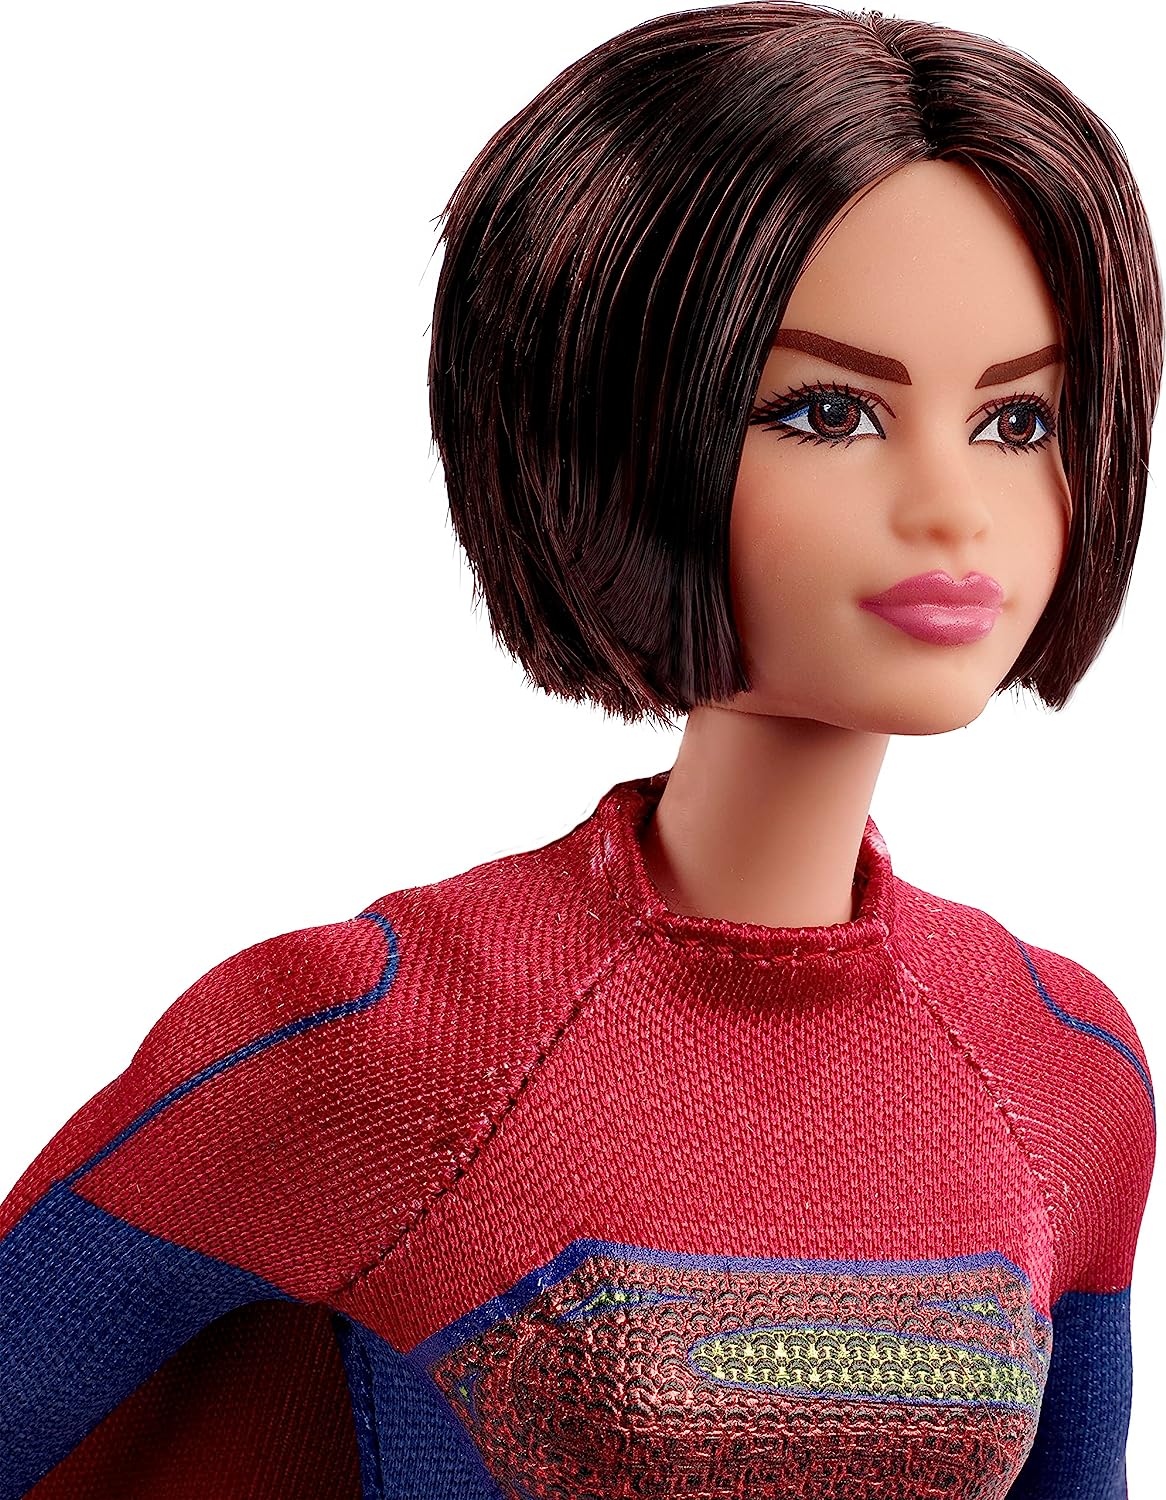 Barbie Signature Supergirl Doll